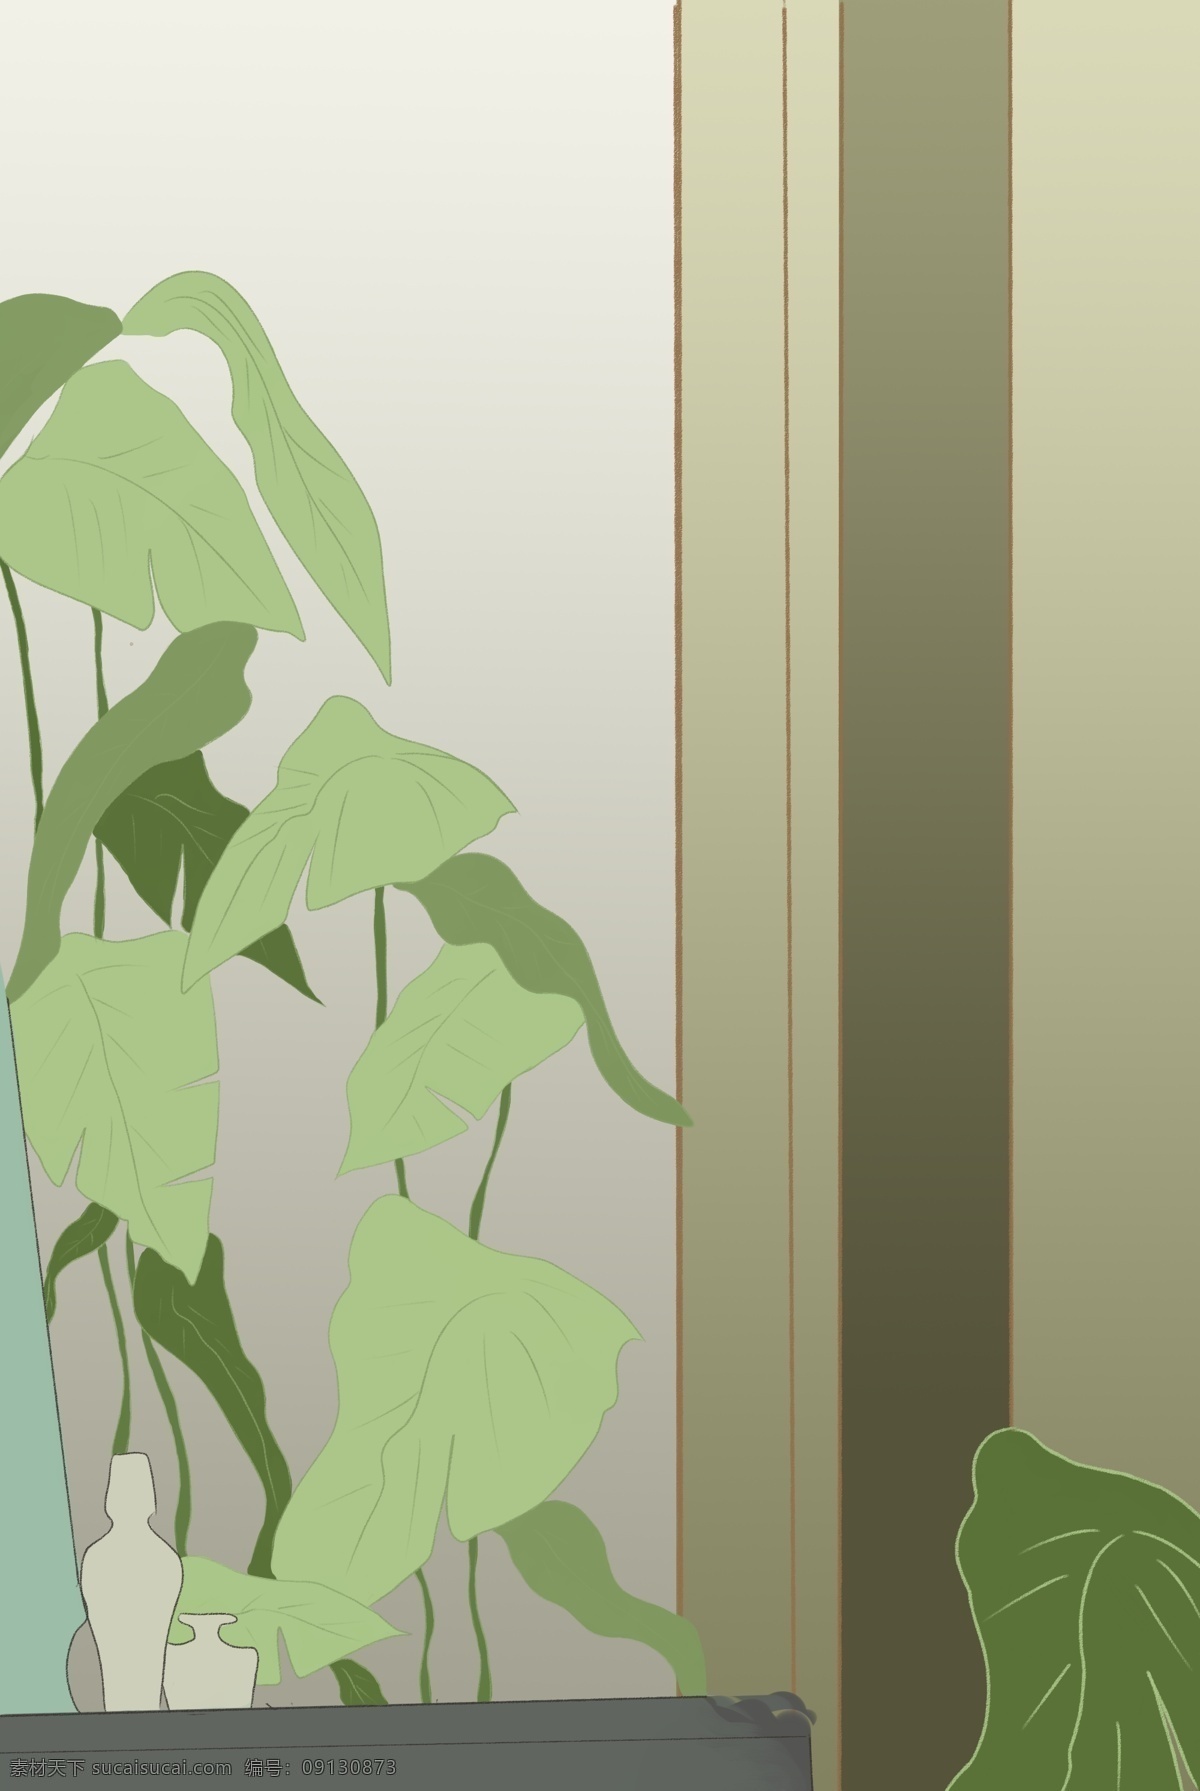 绿色 创意 植物 意境 元素 环境 纹理 卡通插画 叶片 大自然 边框 窗户 简约 叶子